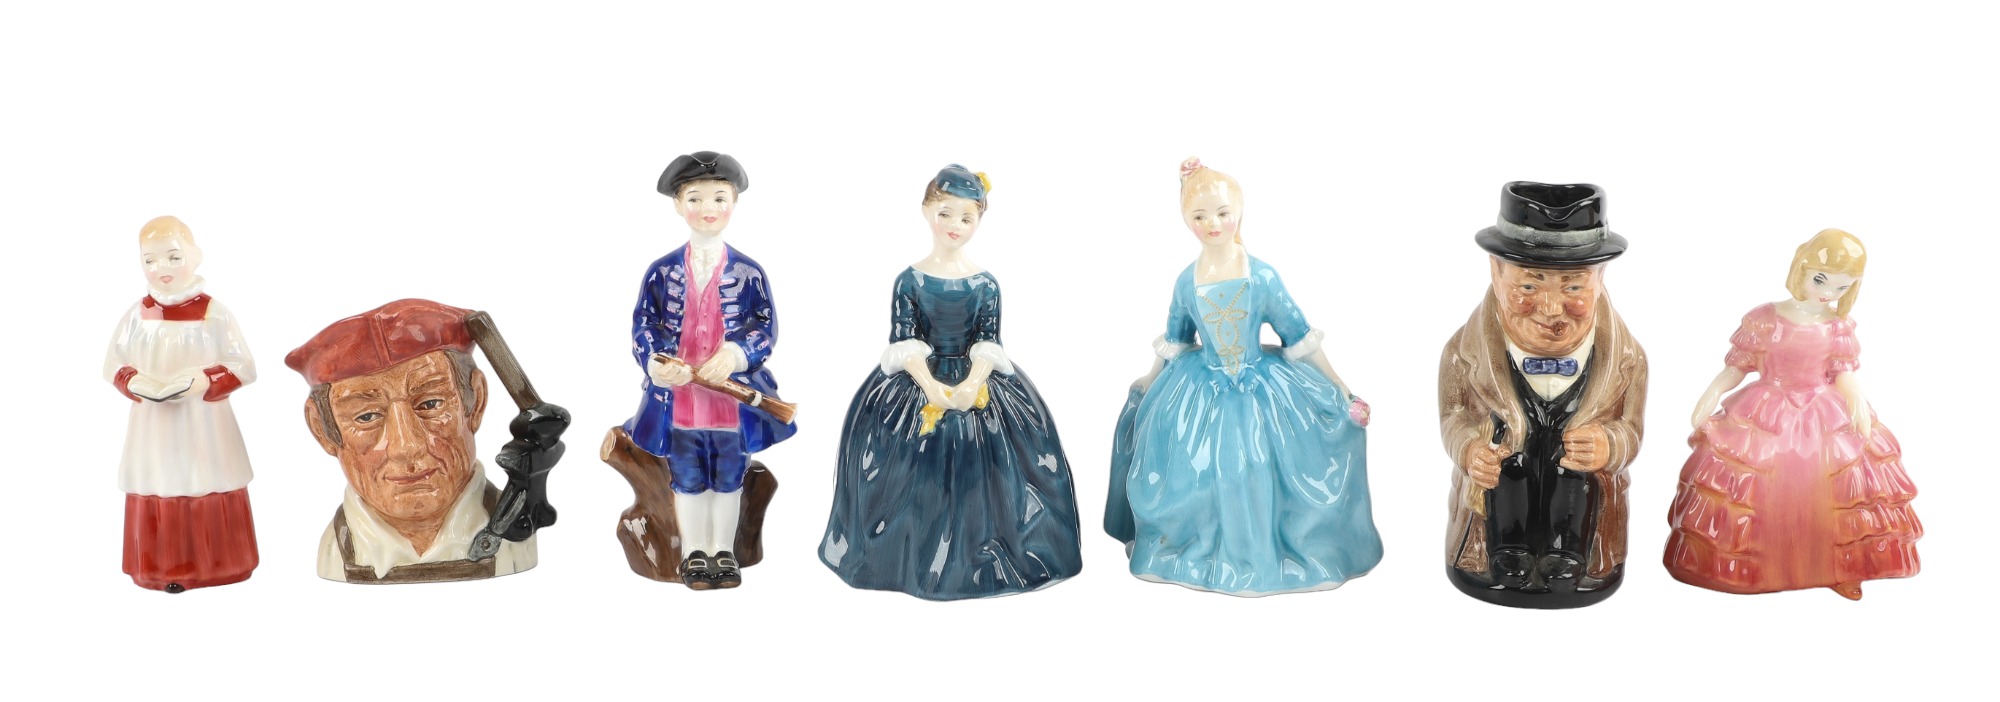  7 Royal Doulton porcelain figurines 3ca628